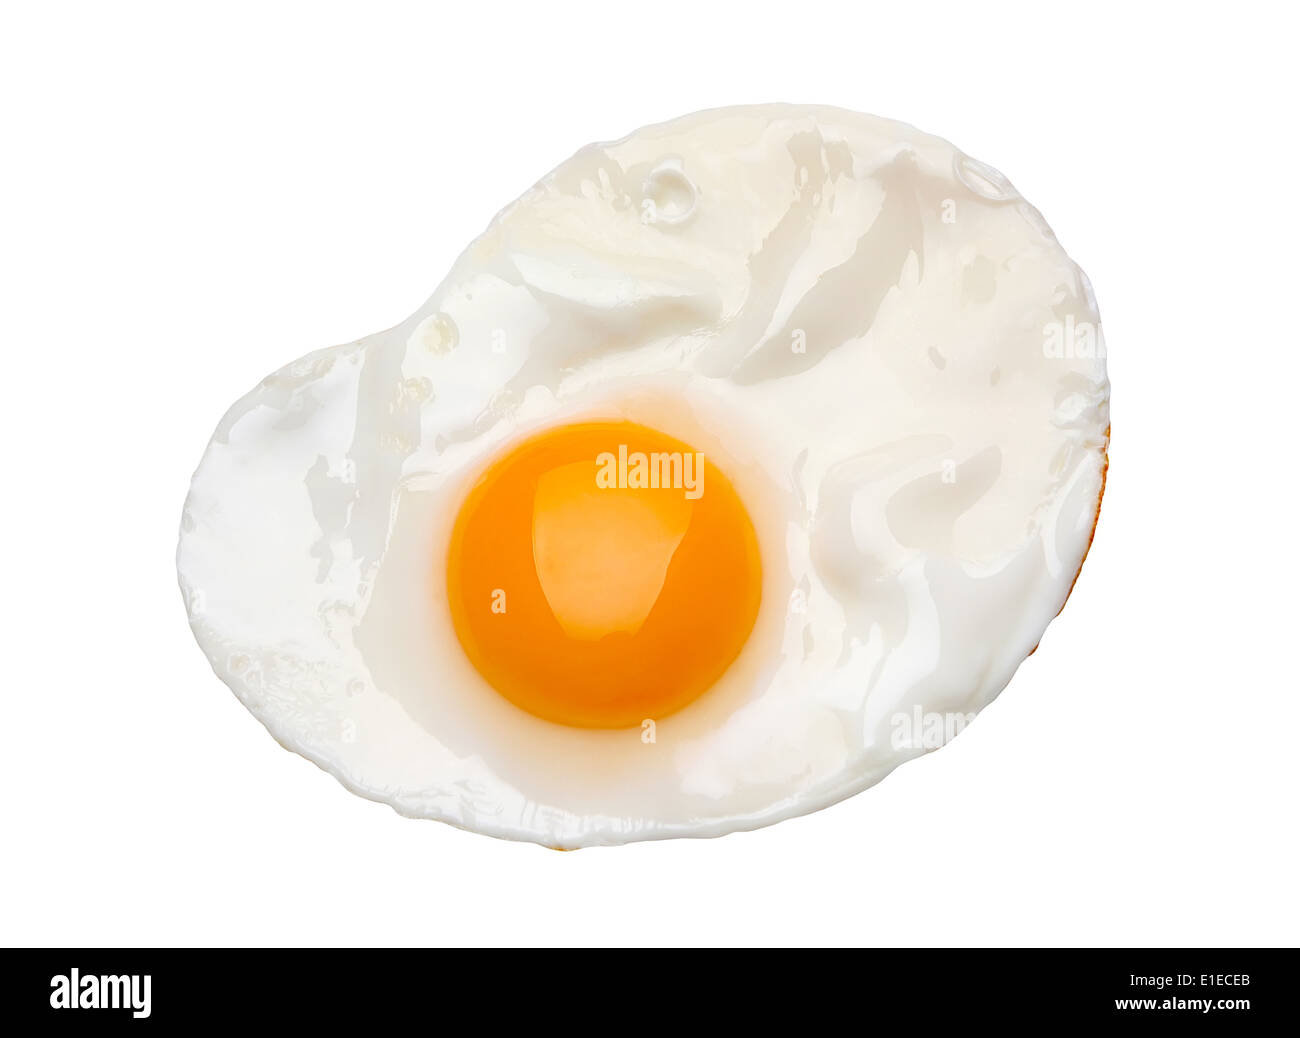 Fried egg isolated on white background Stock Photo